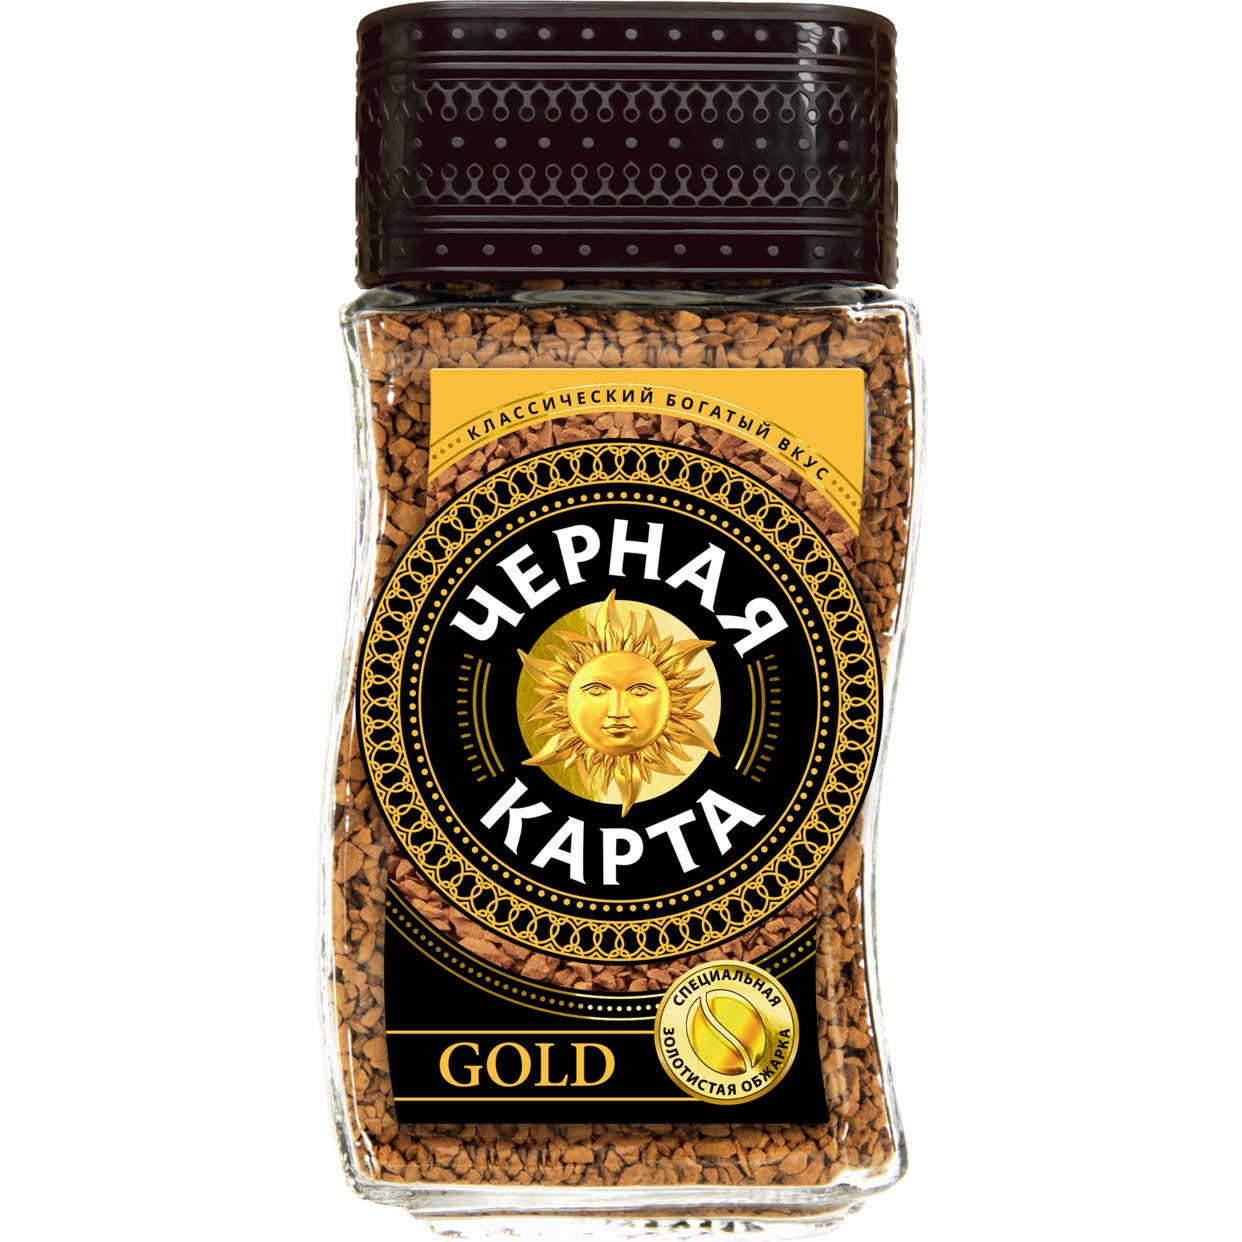 Кофе Черная Карта, Gold, растворимый, 95 г по акции в Пятерочке